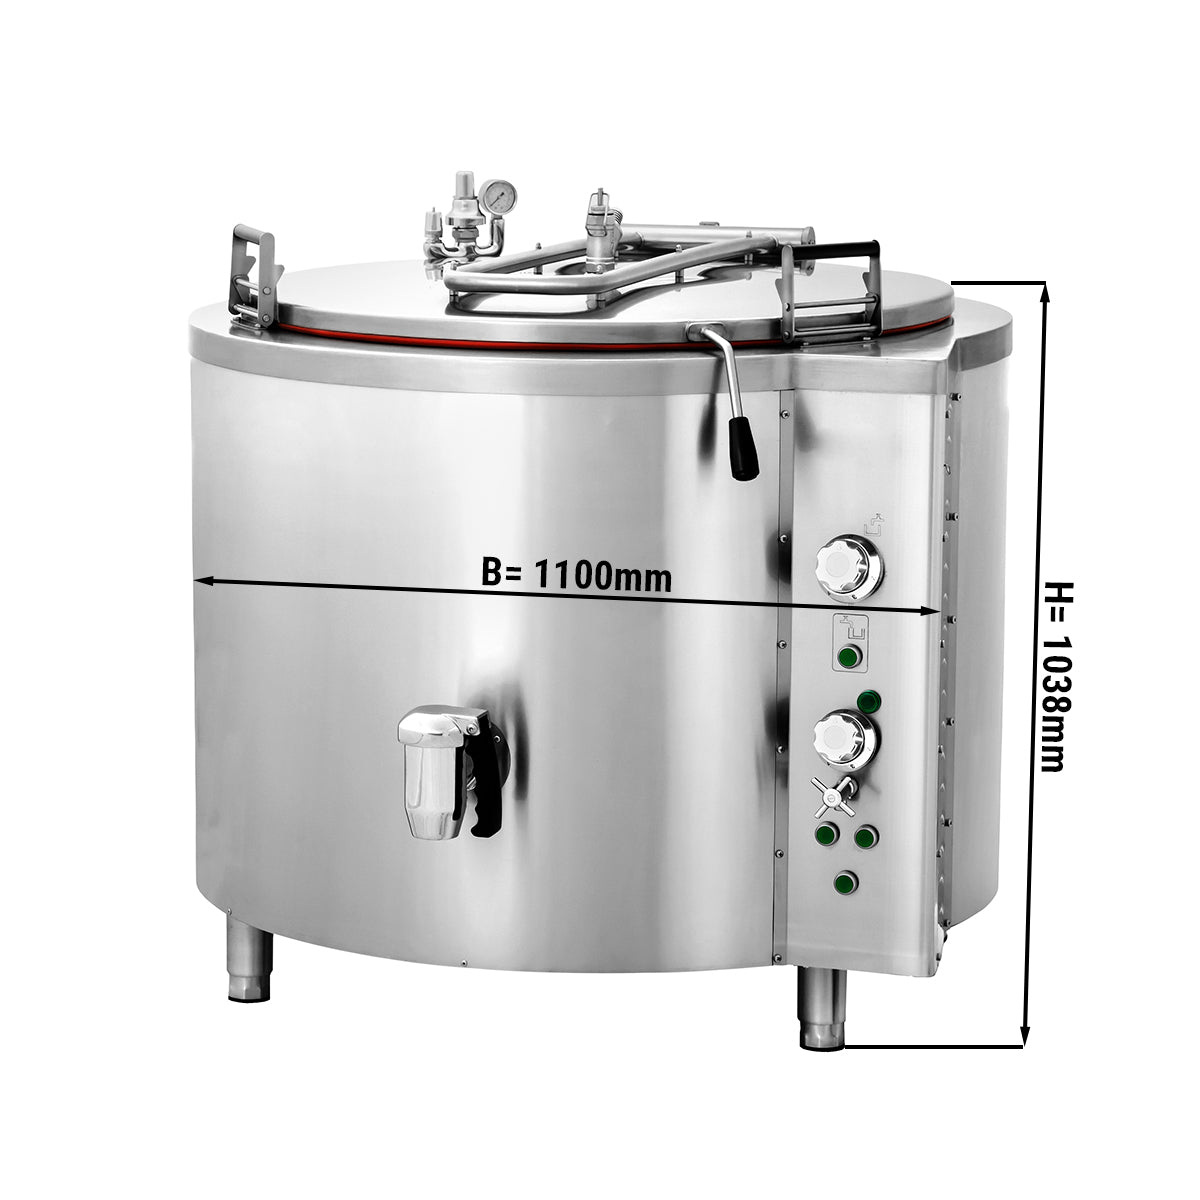 Elektrisk kokegryte - 400 liter - Indirekte oppvarming